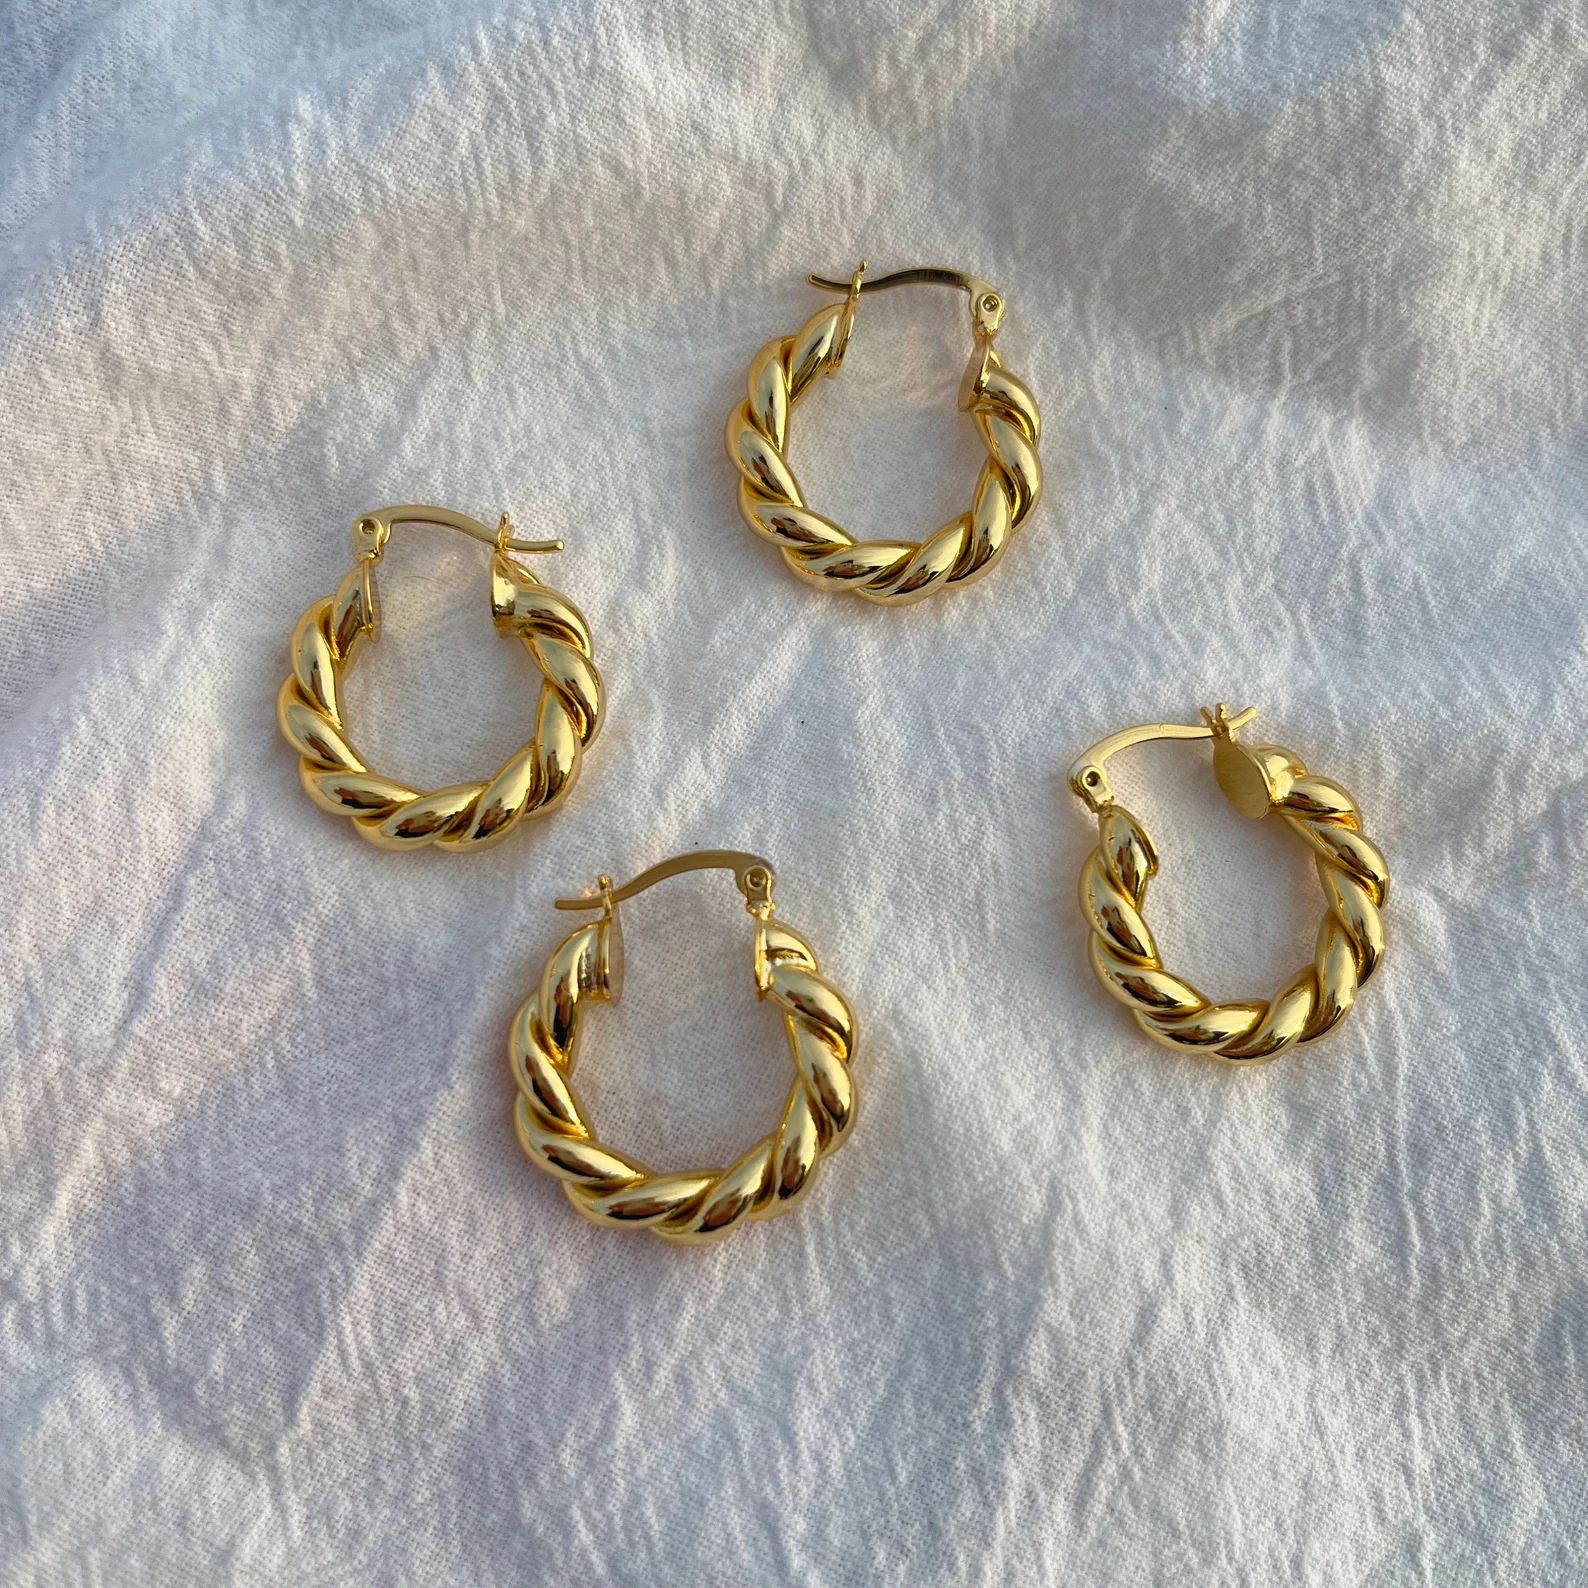 18K Gold Kids Hoop Earrings,Baby Hoop Earrings,Small Hoop Earrings,Kids Jewelry,Gold Hoop Earring... | Etsy (US)